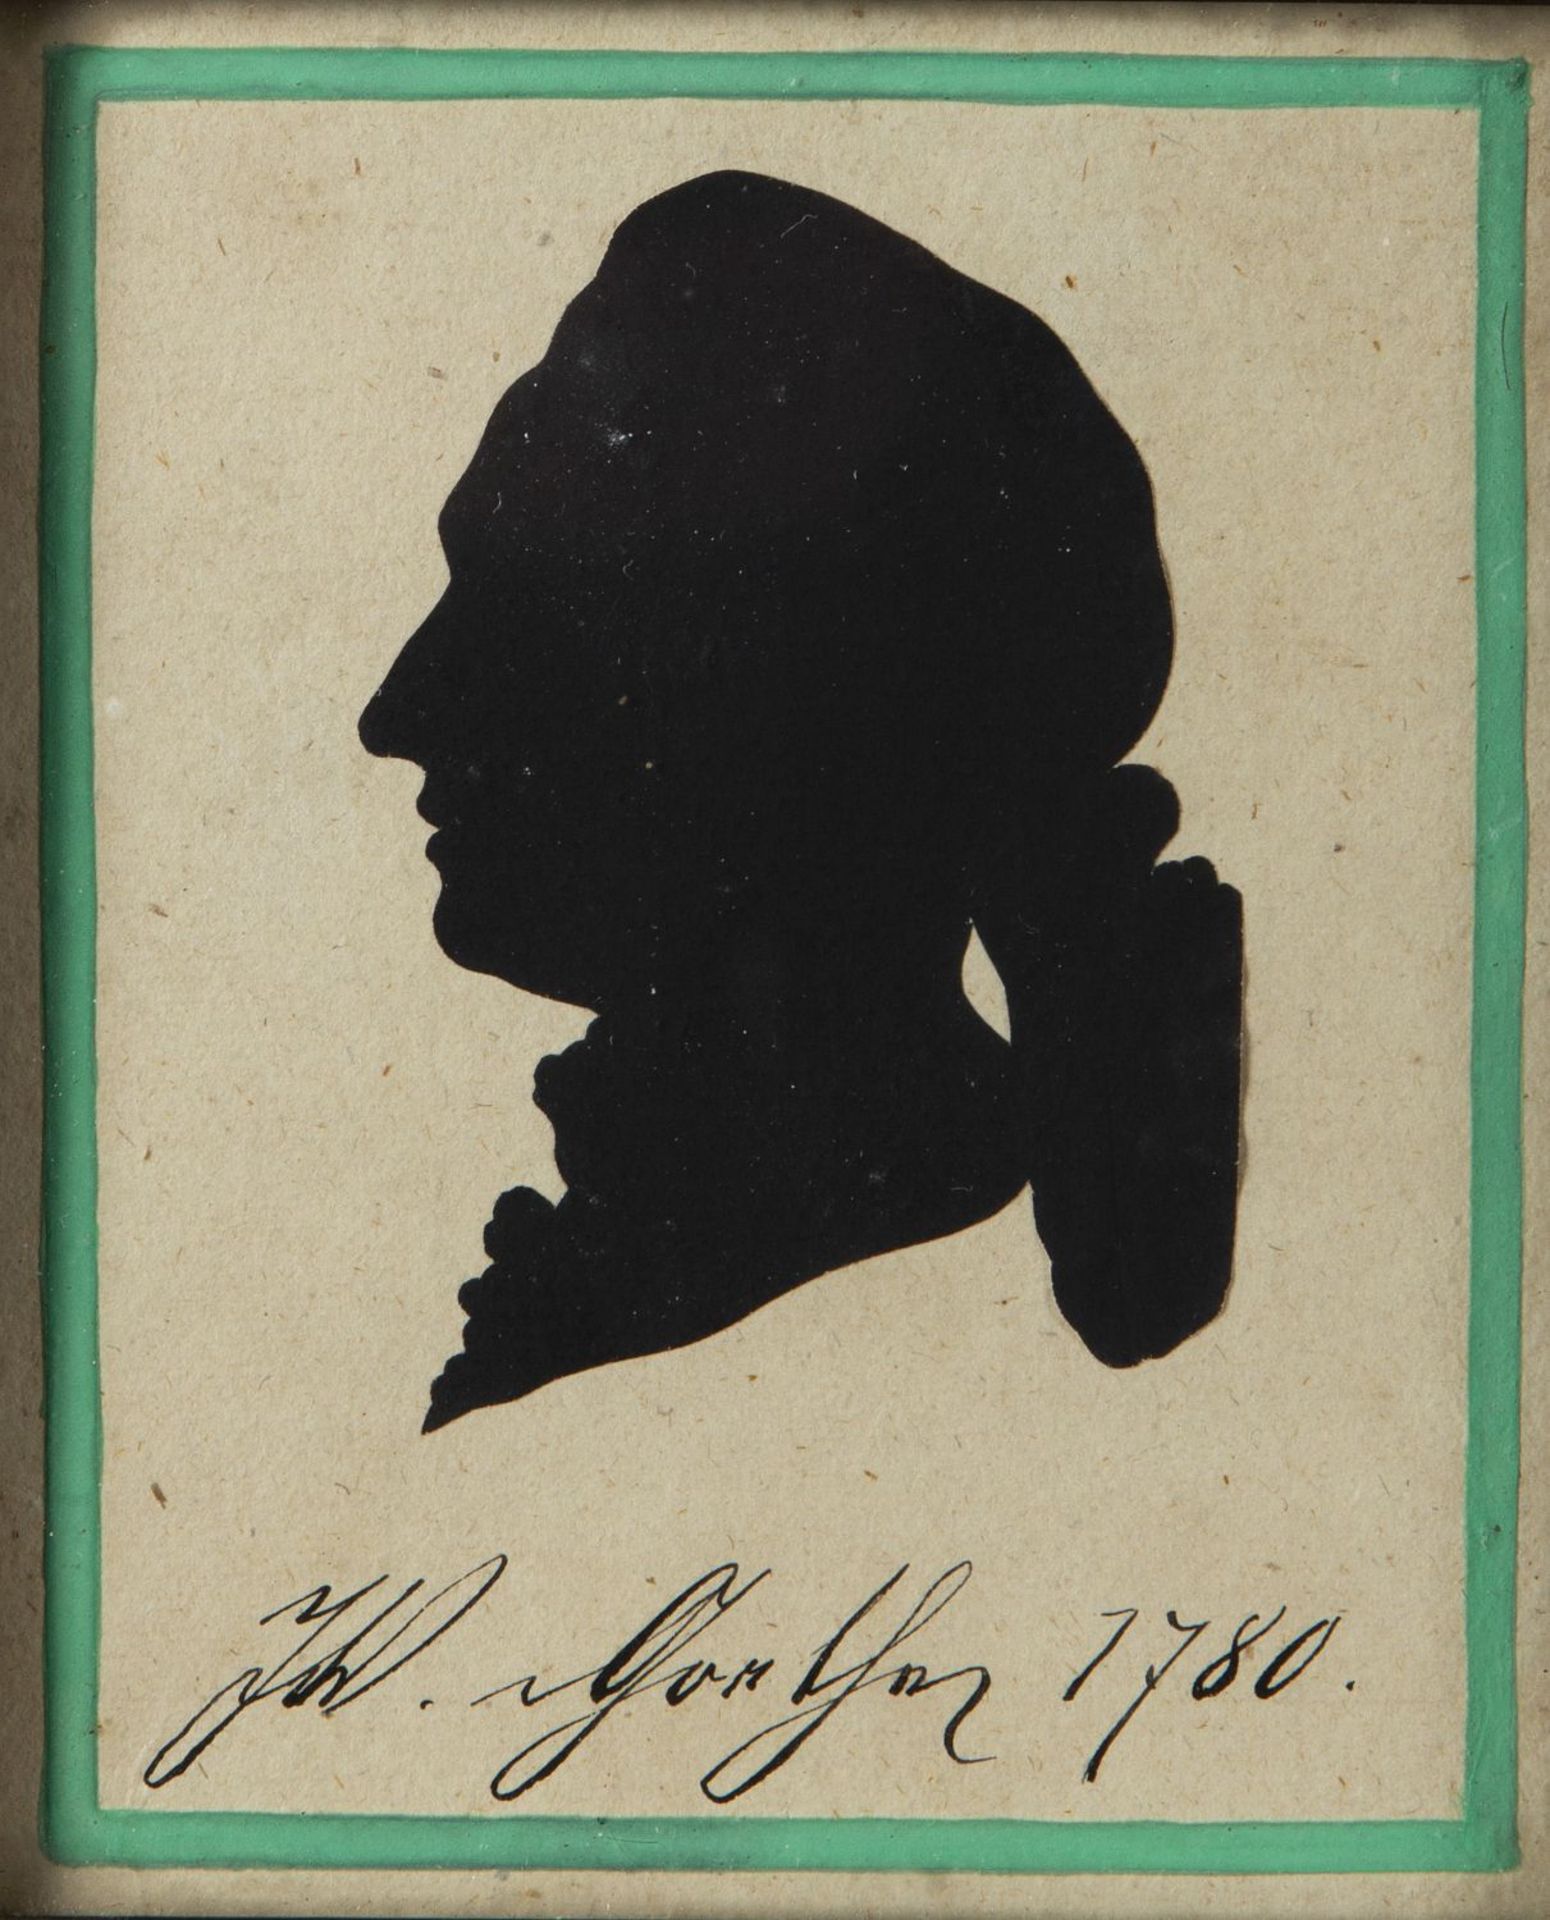 Unbekannt, Ende 19. Jh. Der Kuss. Schattenriss von Johann W. Goethe. 1 kol. Radierung. 1 Scherenschn - Bild 3 aus 3